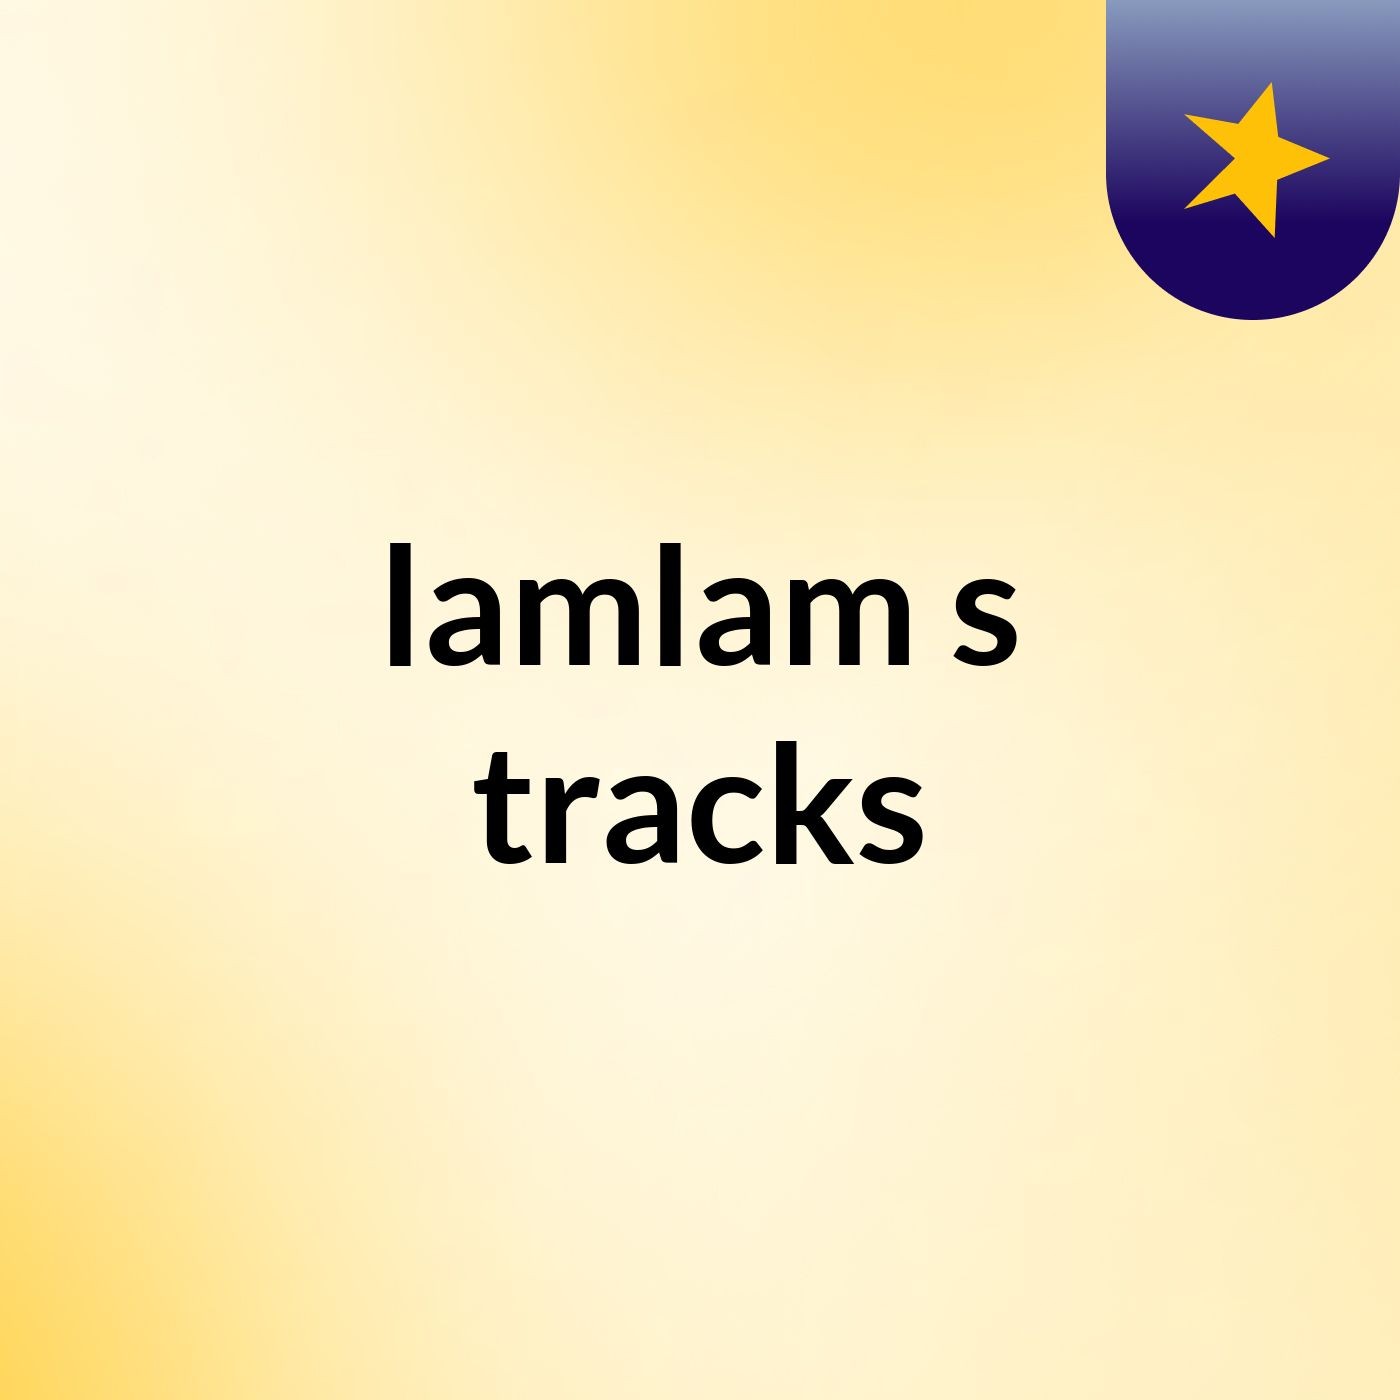 lamlam's tracks